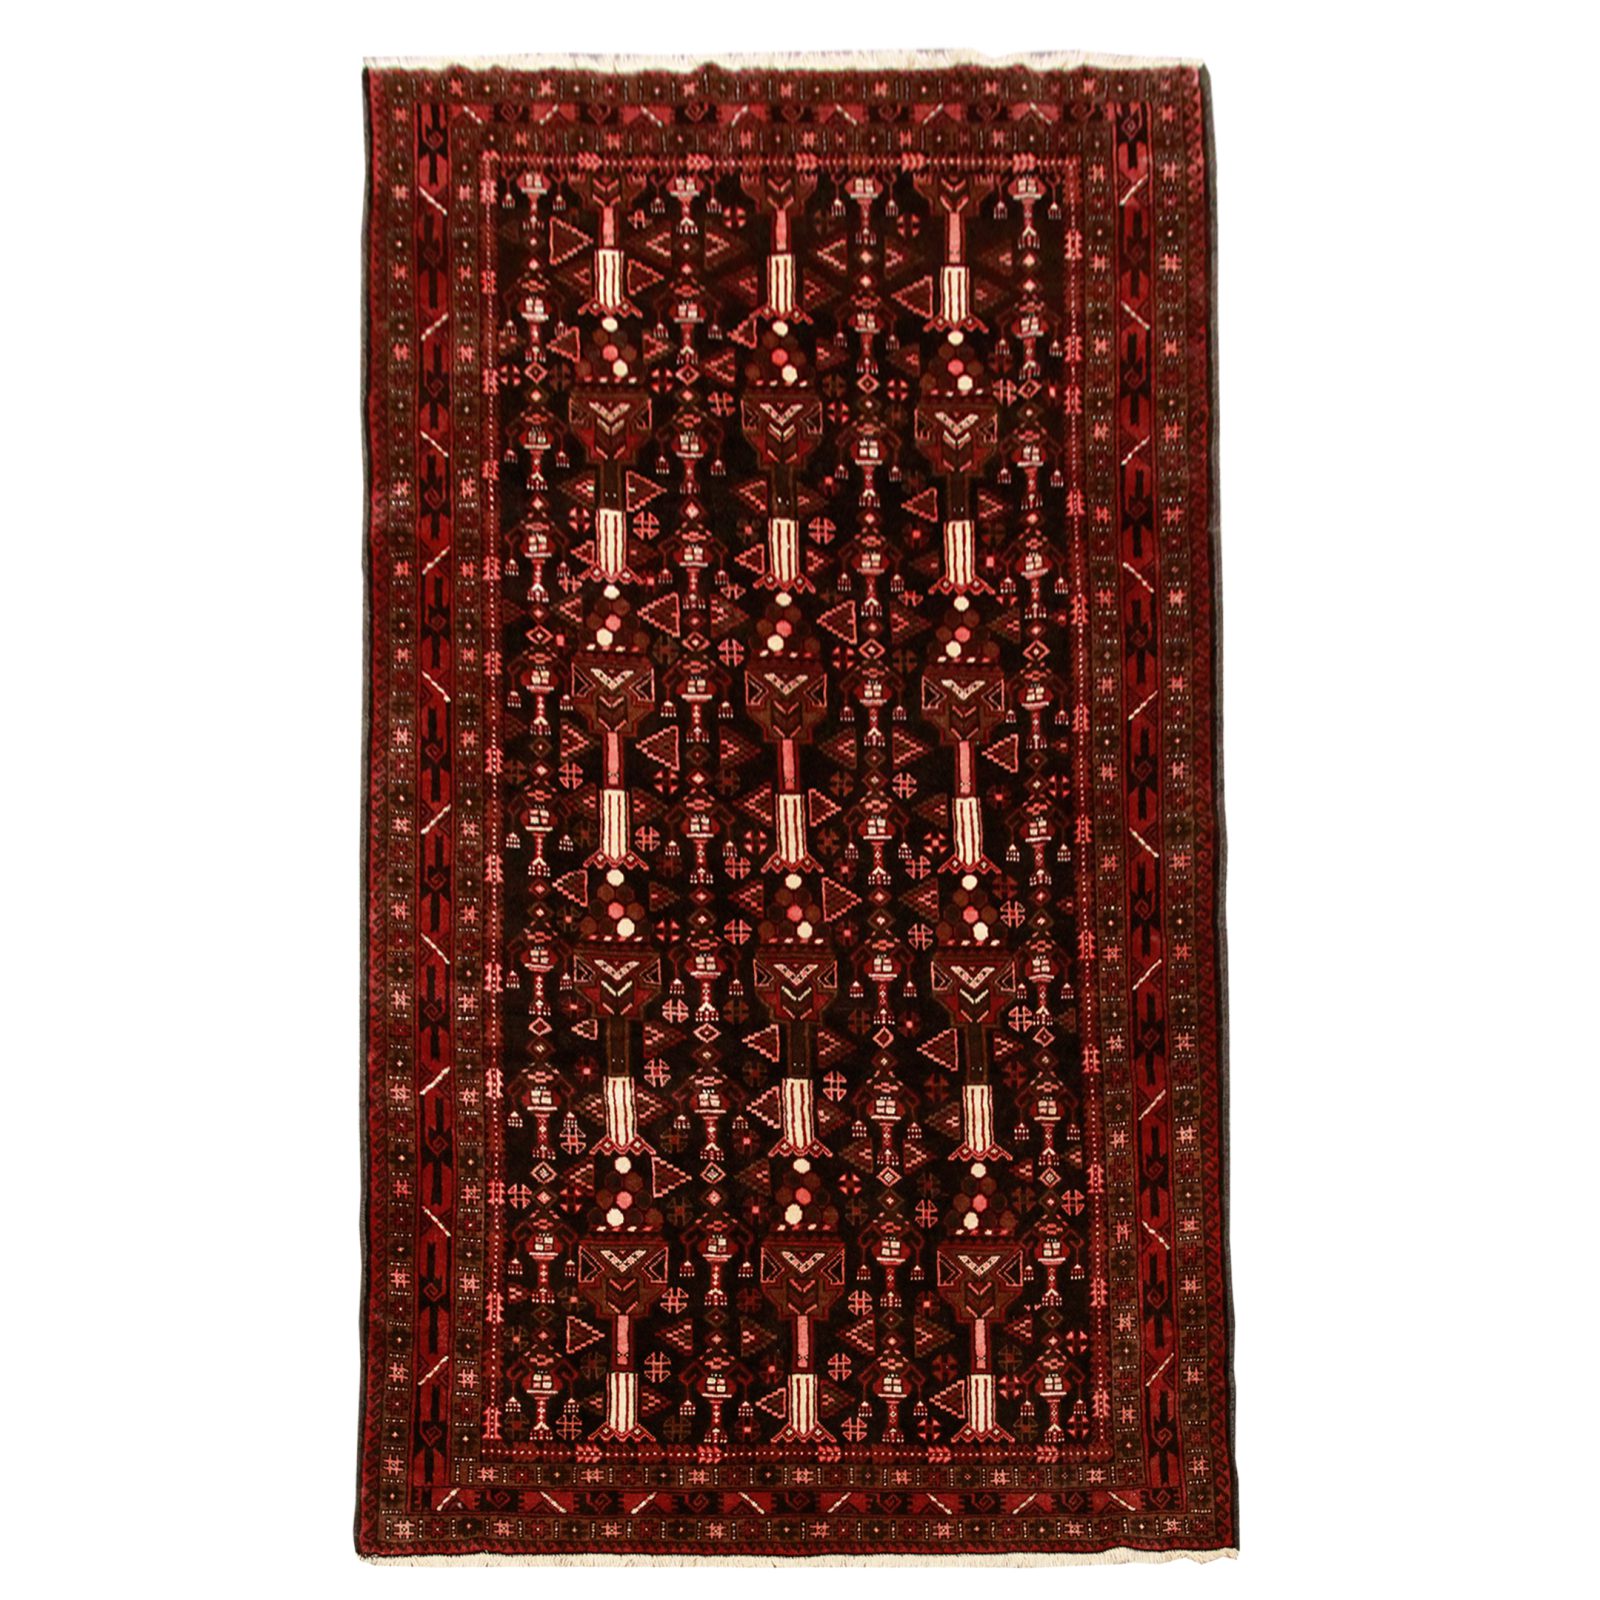 فرش دستباف بلوچ طرح گلداني سایز ميانه۳٫۰۴×۱٫۴۵ رنگ زمینه سرمه اي رنگ حاشیه لاكي کد ۴۵۳۱۶